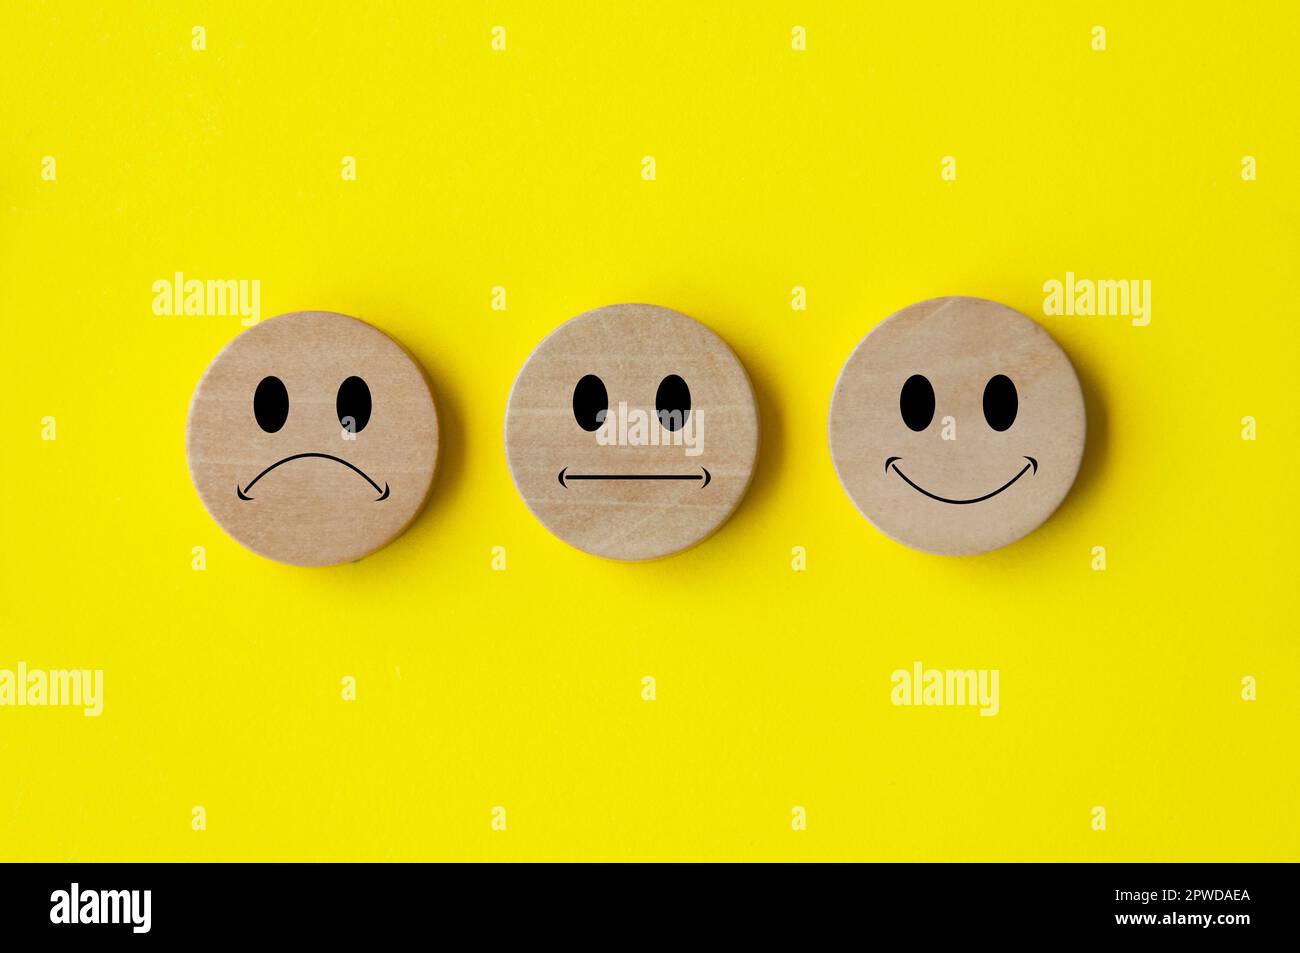 Faccine emoticon felici, tristi e neutrali su cerchio di legno con copertura di fondo gialla. Feedback dei clienti, soddisfazione, valutazione e concetto. Foto Stock